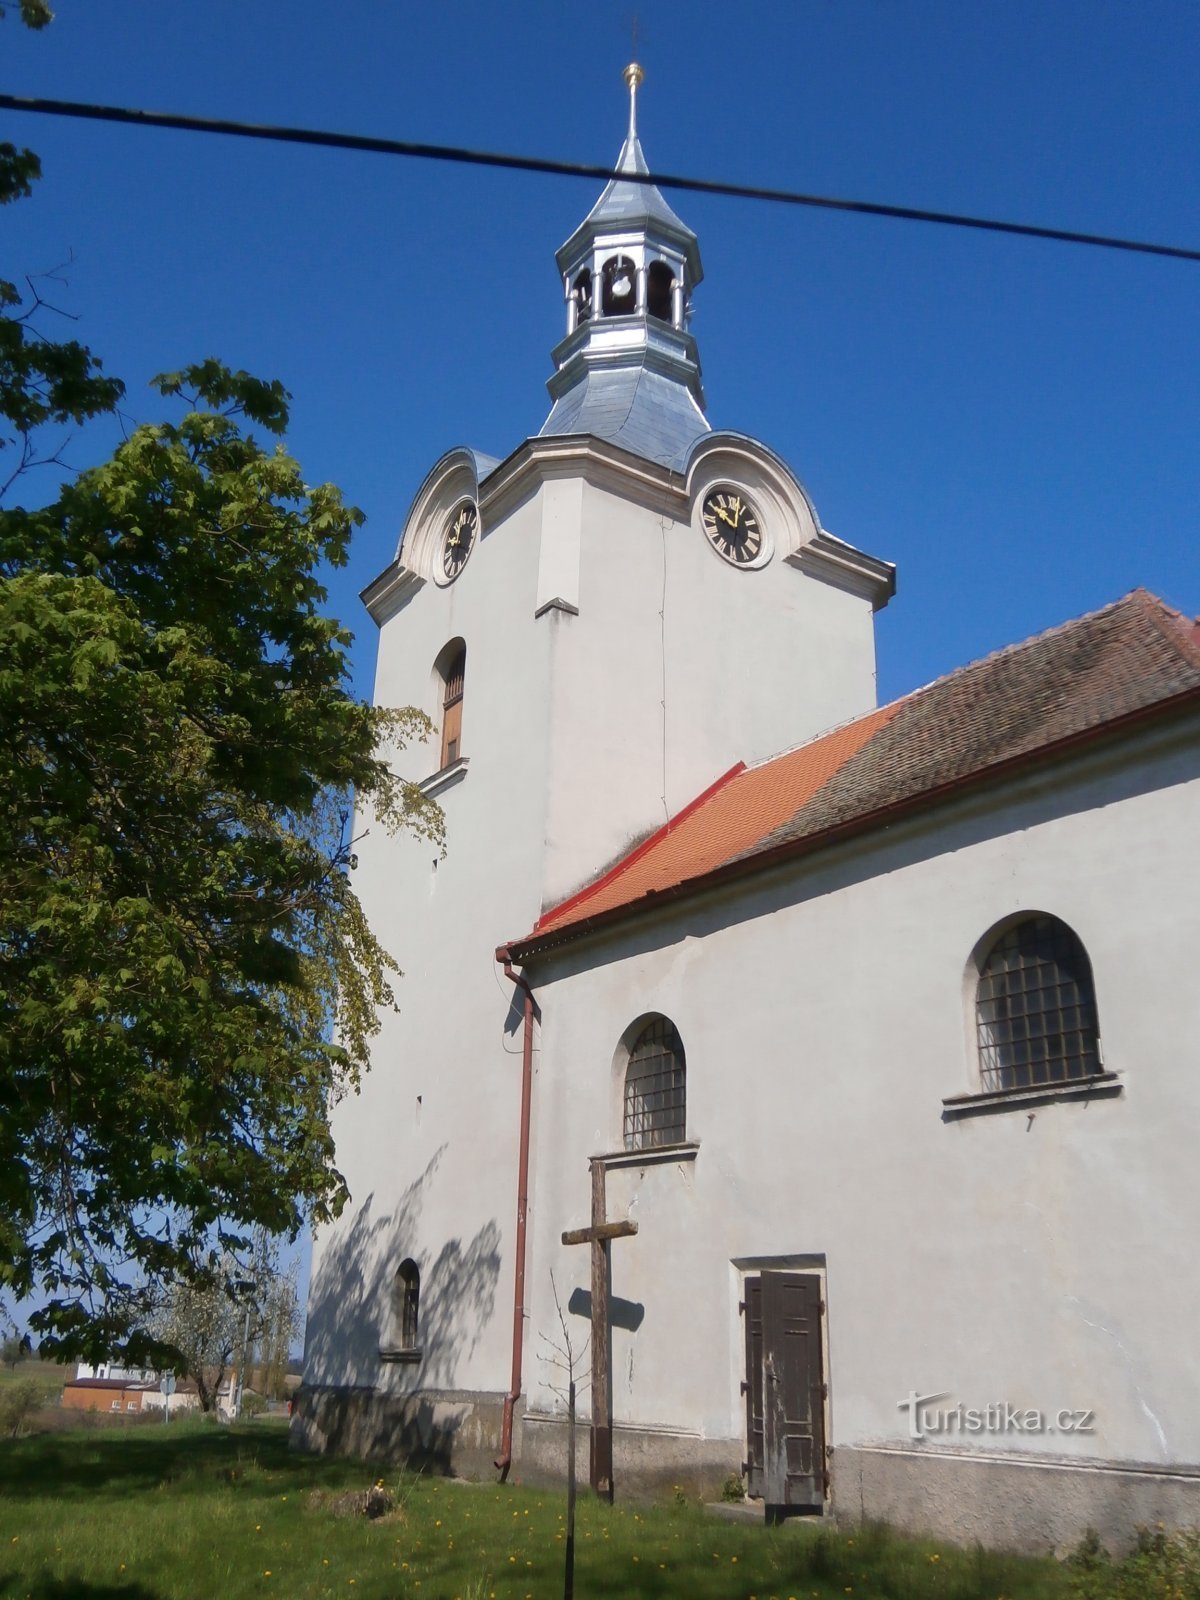 Церковь св. Вацлав (Чибуз)